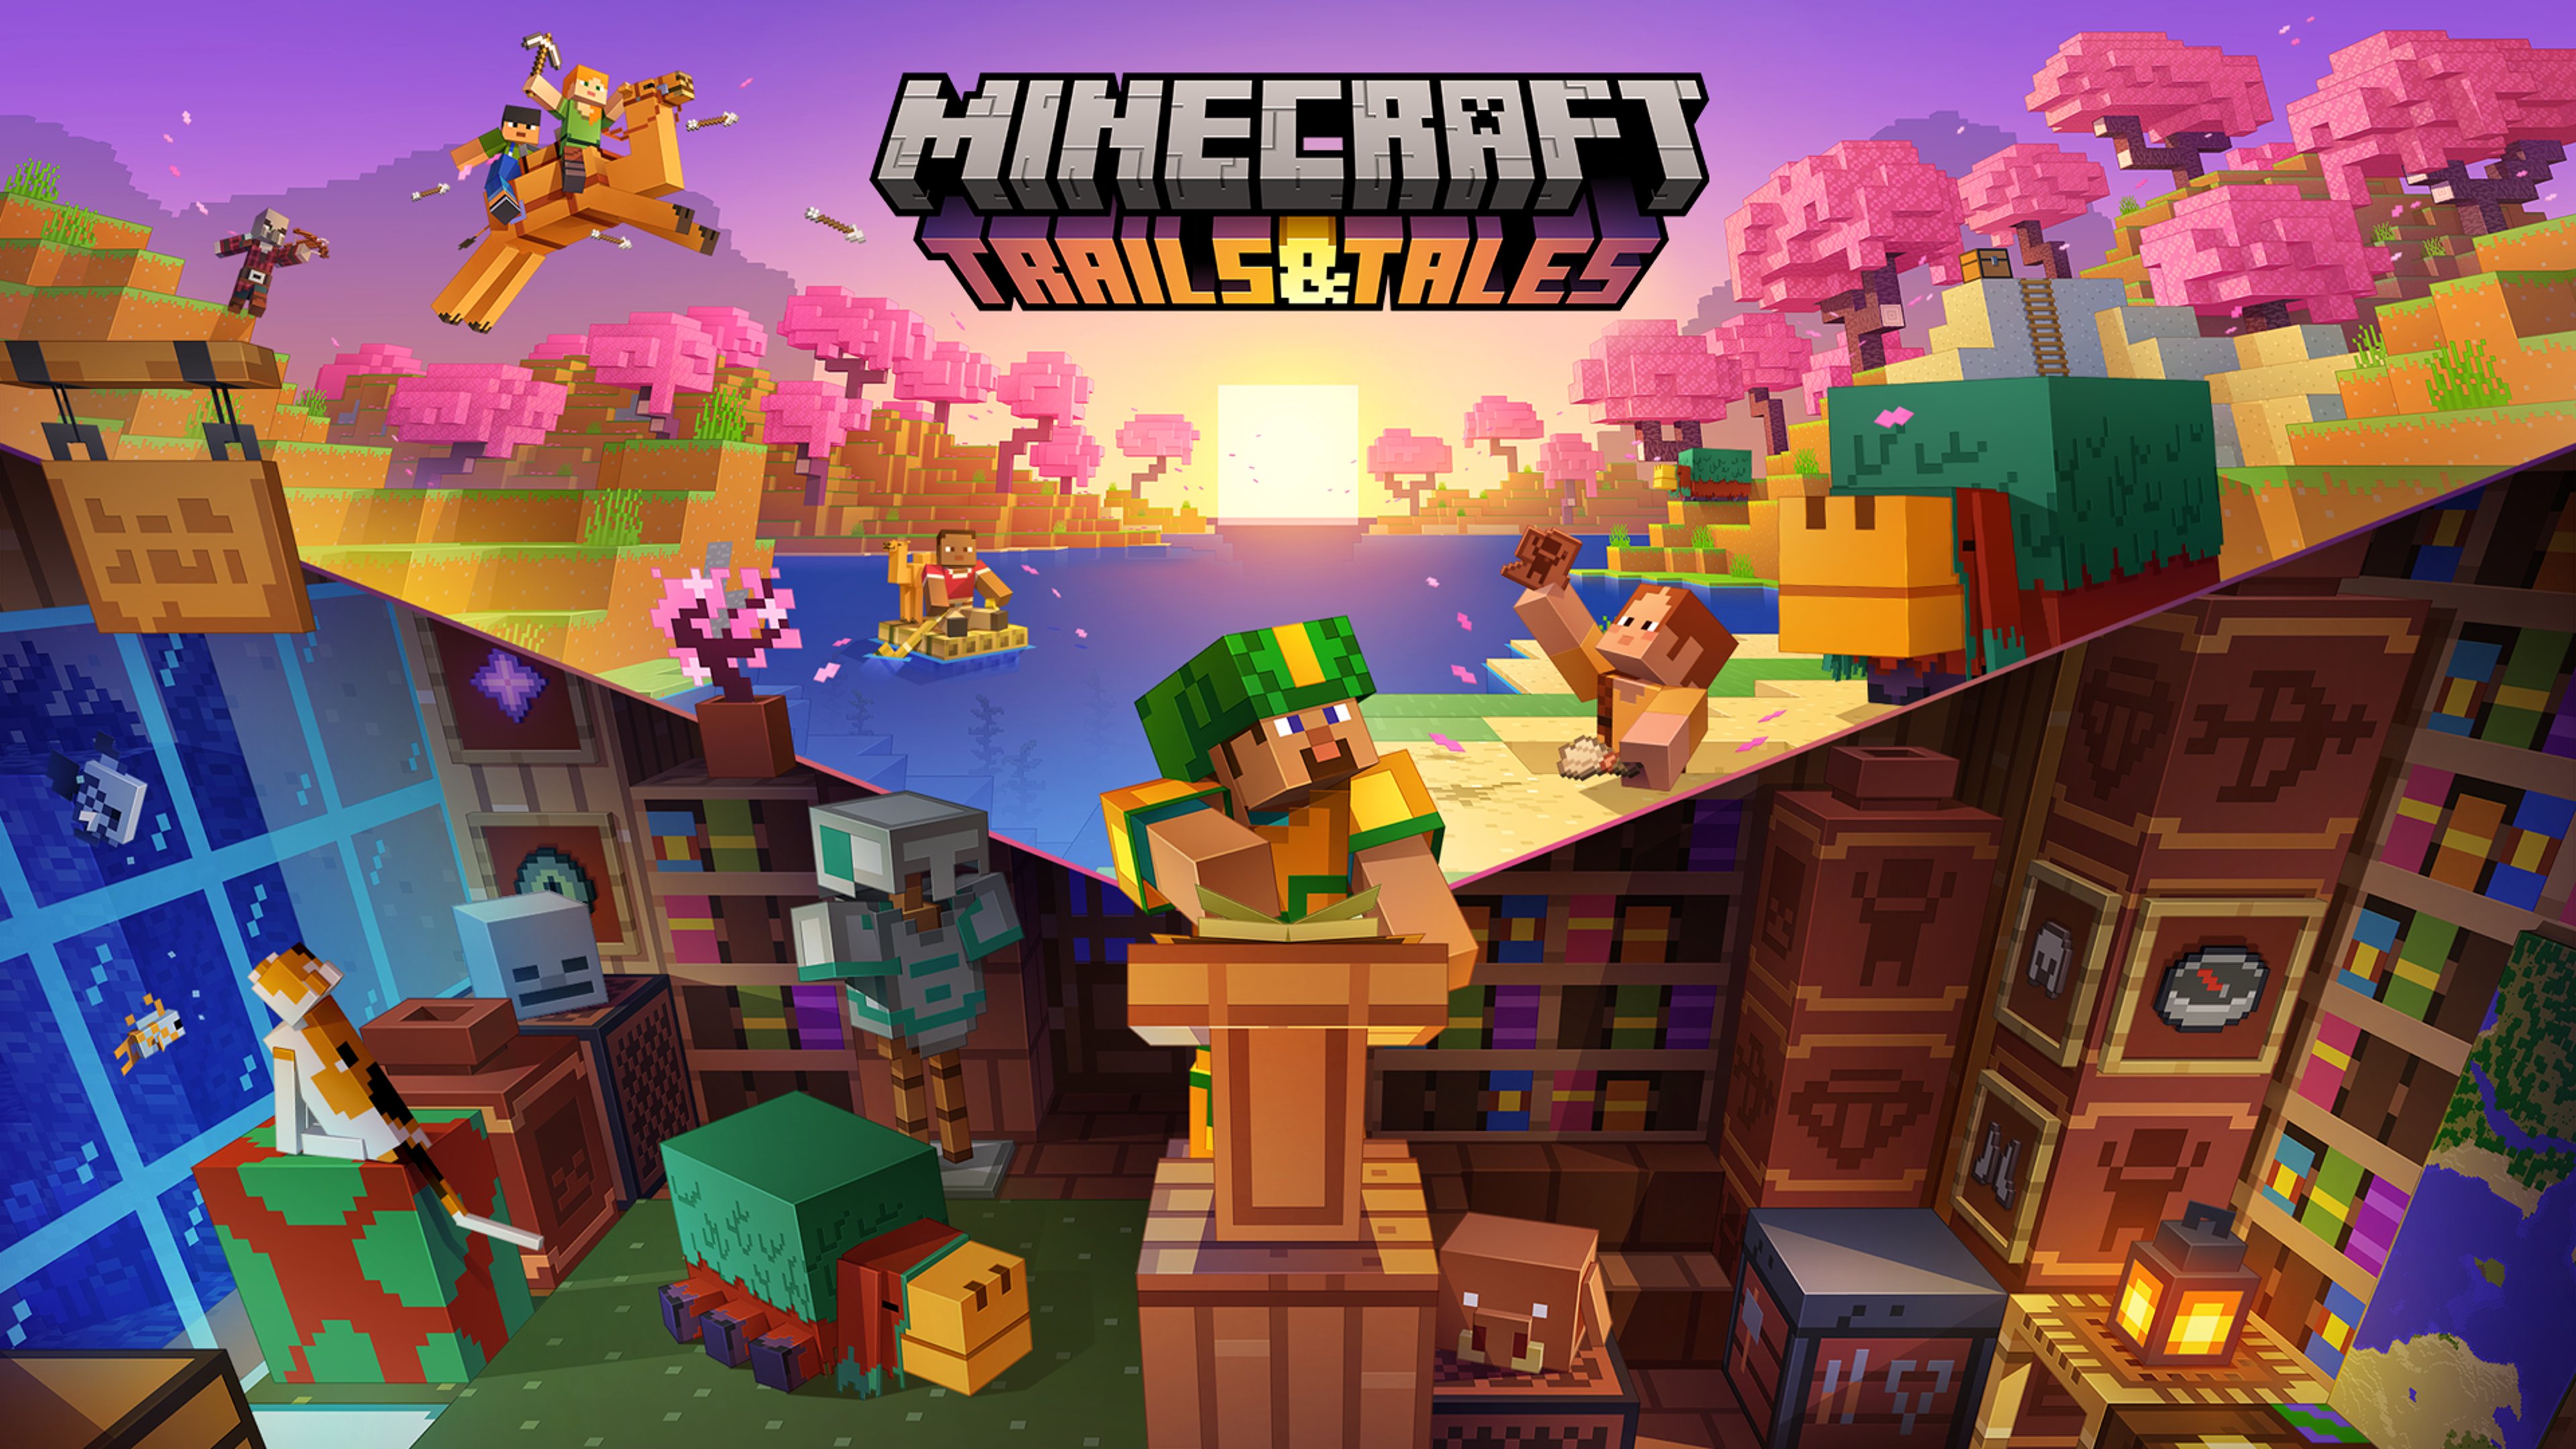 Aggiornamento Minecraft Trails & Tales disponibile dal 7 giugno